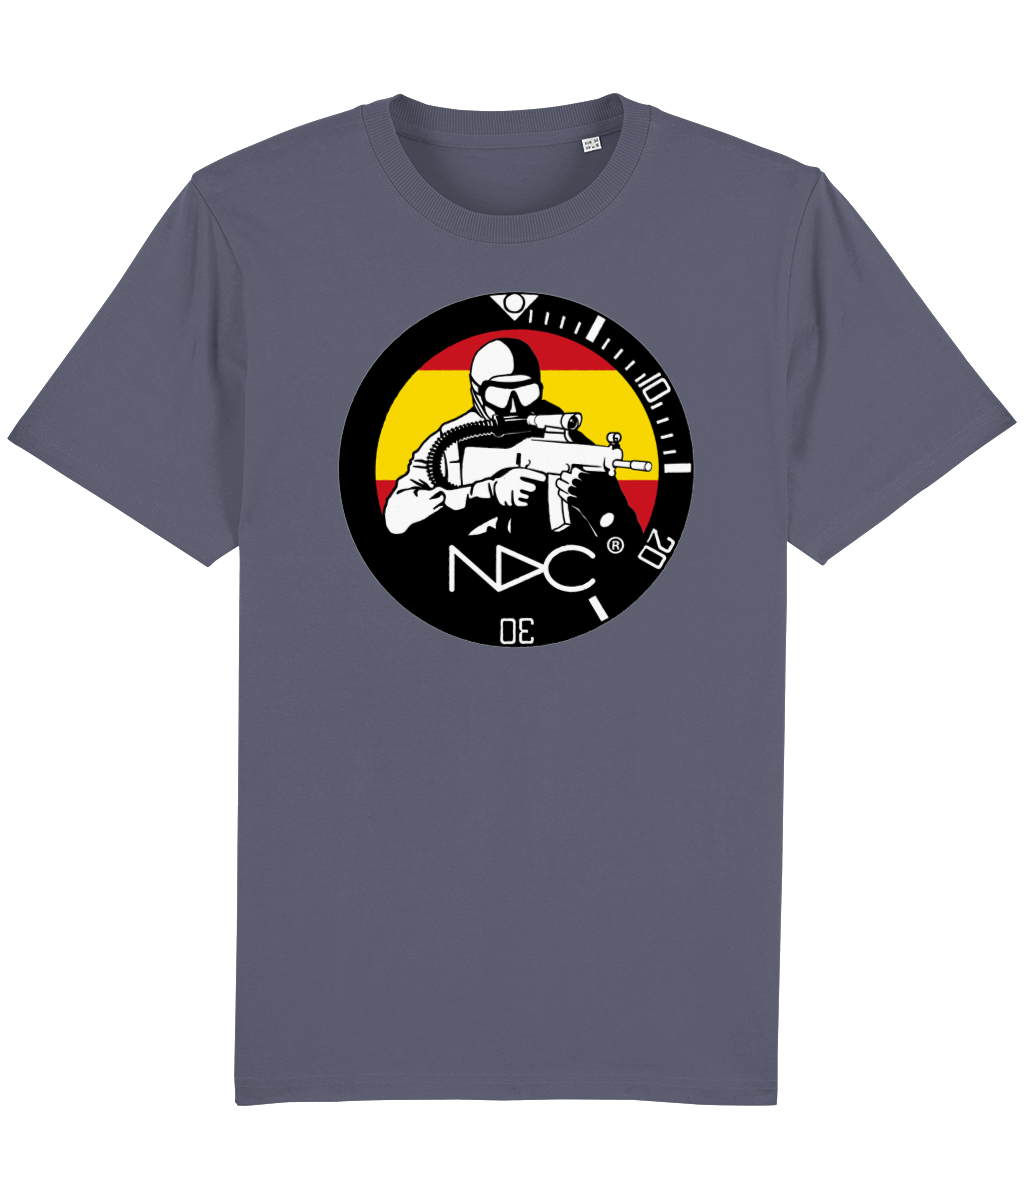 NDC Spain Teeshirt - NDC Straps